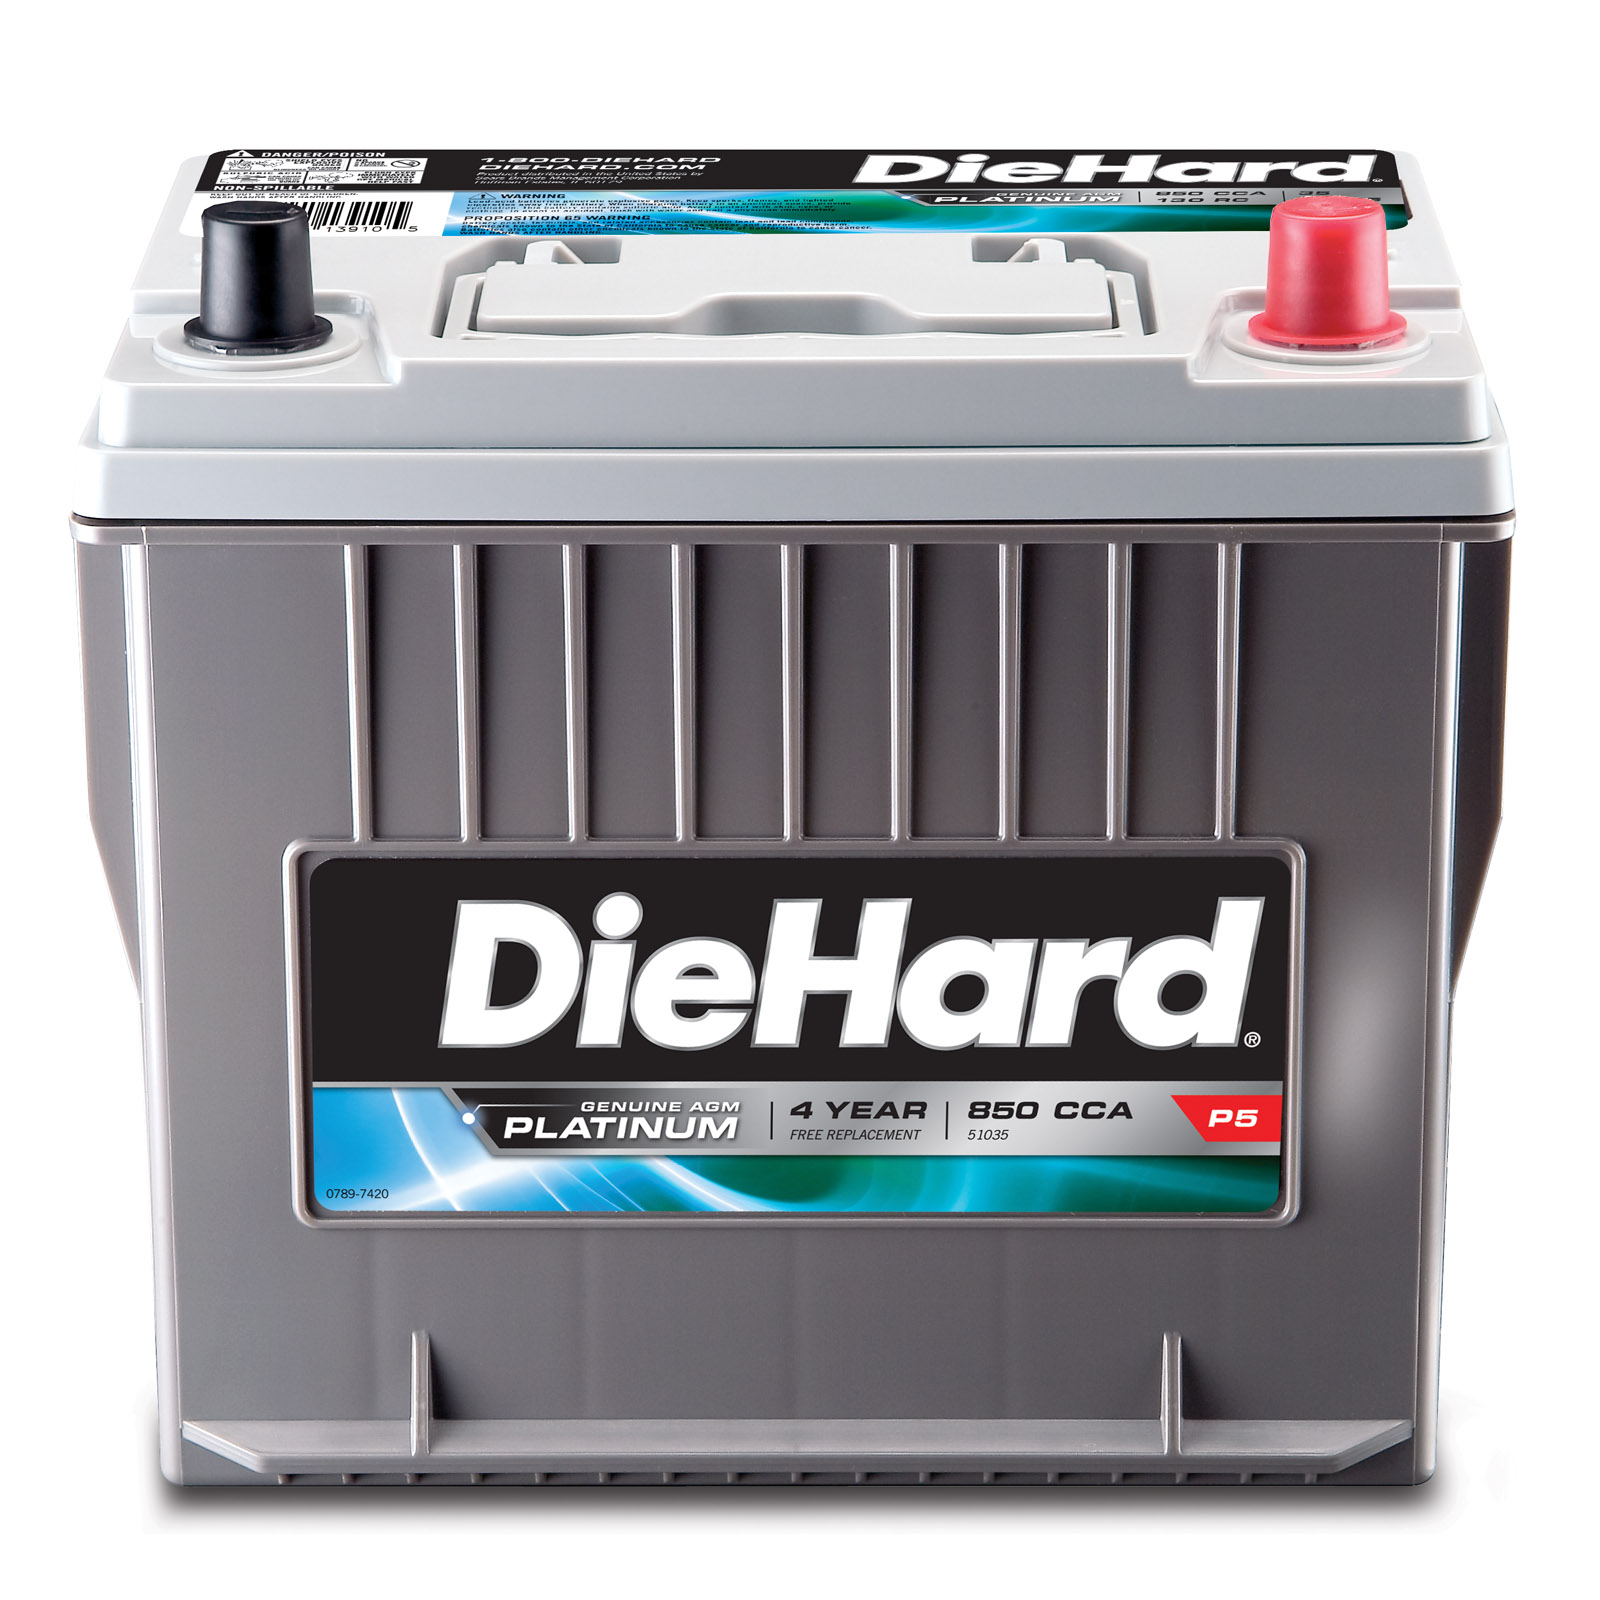 diehard-platinum-battery-best-car-battery-deals-at-sears